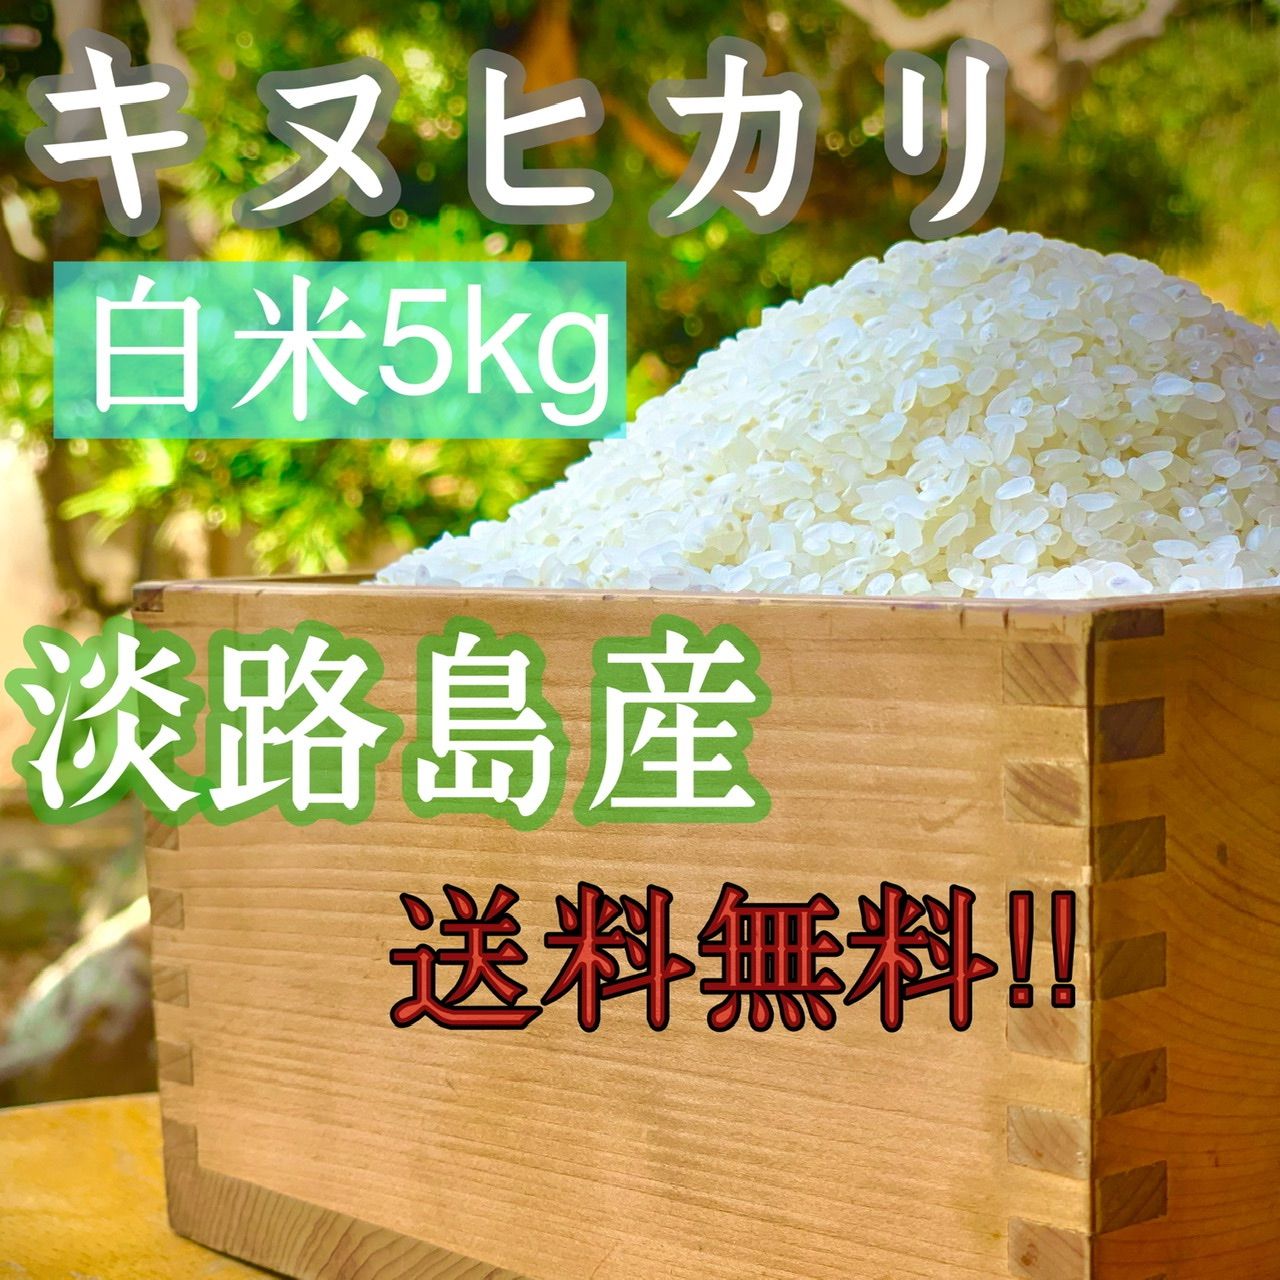 特別セール！玄米限定 令和5年 埼玉県産コシヒカリ 玄米 30kg 美味しいお米